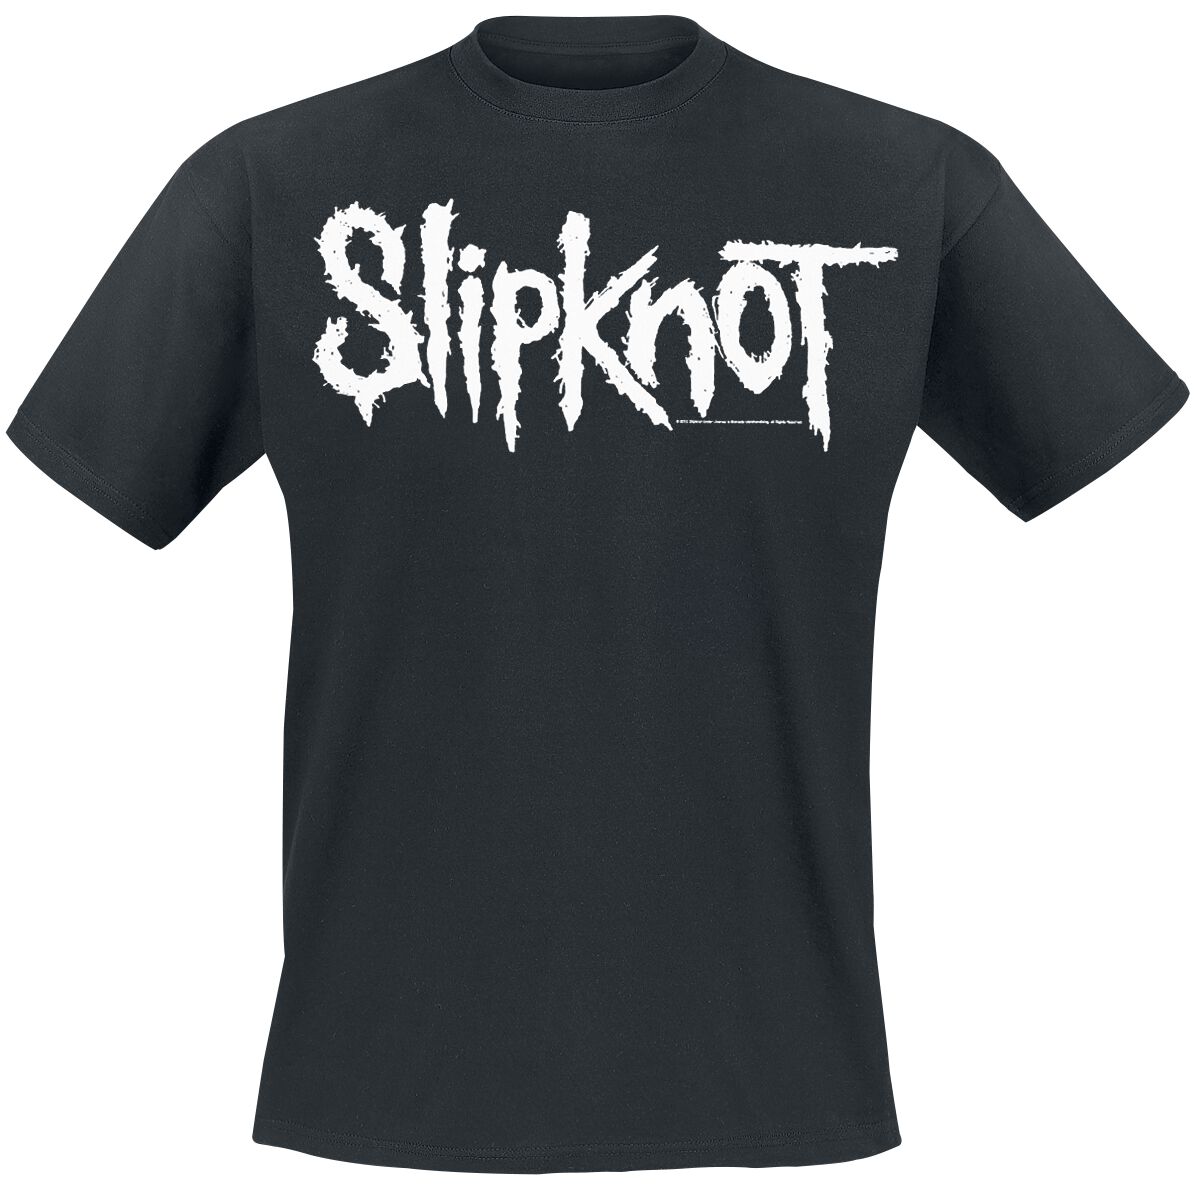 Slipknot T-Shirt - White Logo - S bis 5XL - für Männer - Größe 4XL - schwarz  - EMP exklusives Merchandise!